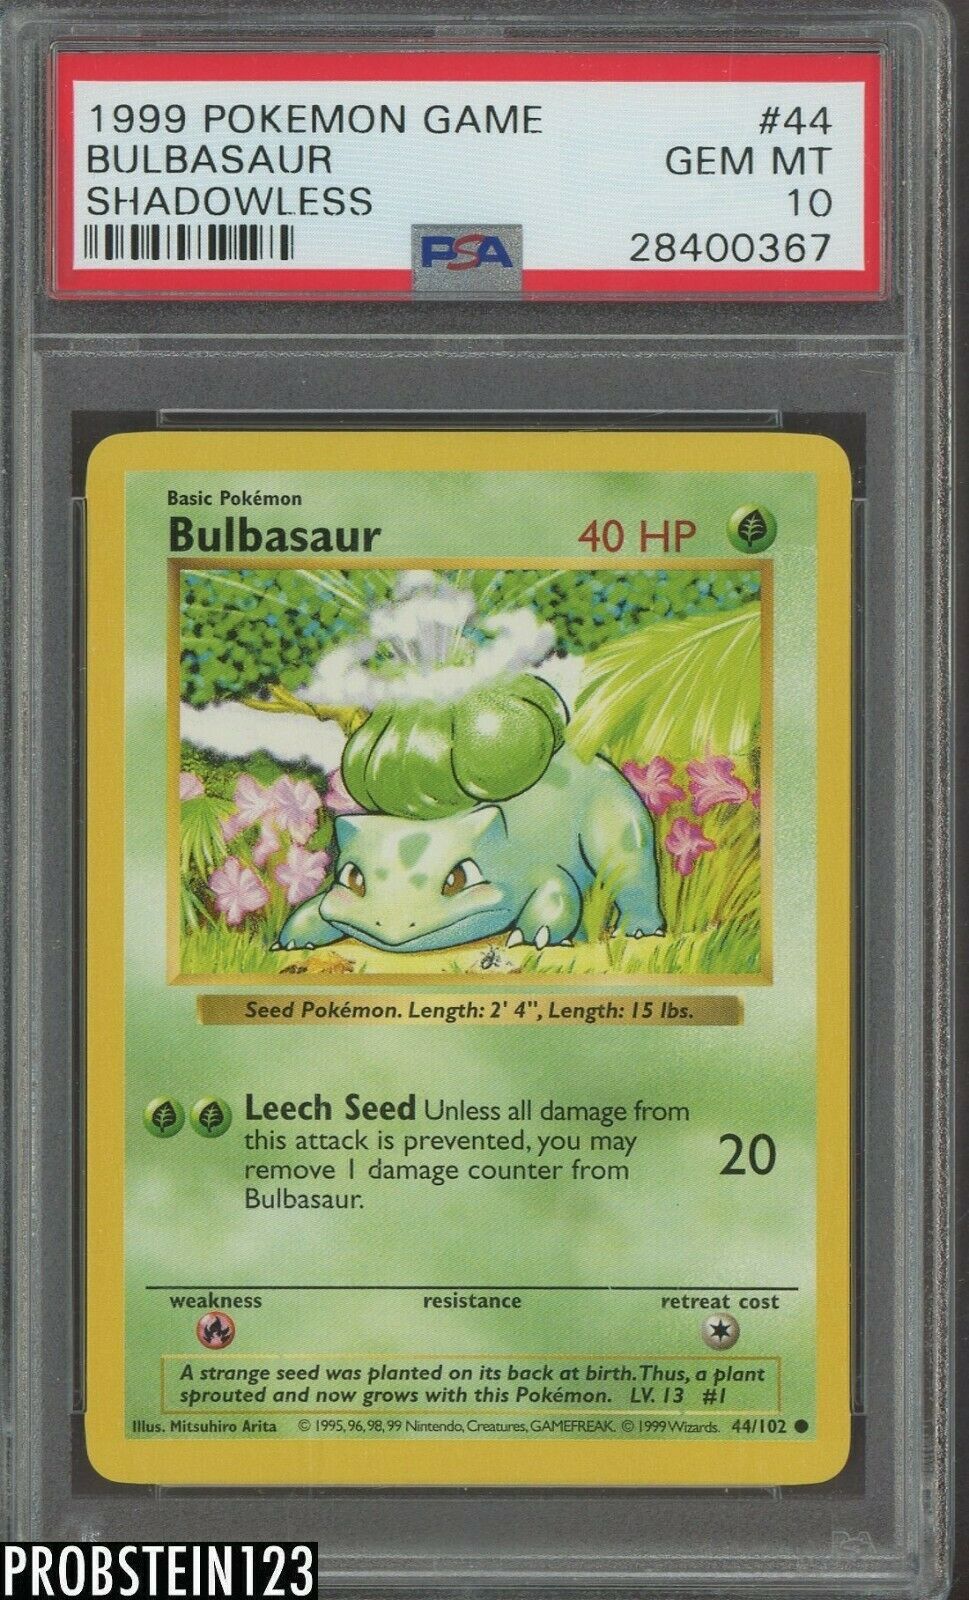 1999 Pokemon Game Shadowless 44 Bulbasaur PSA 10 GEM MINT